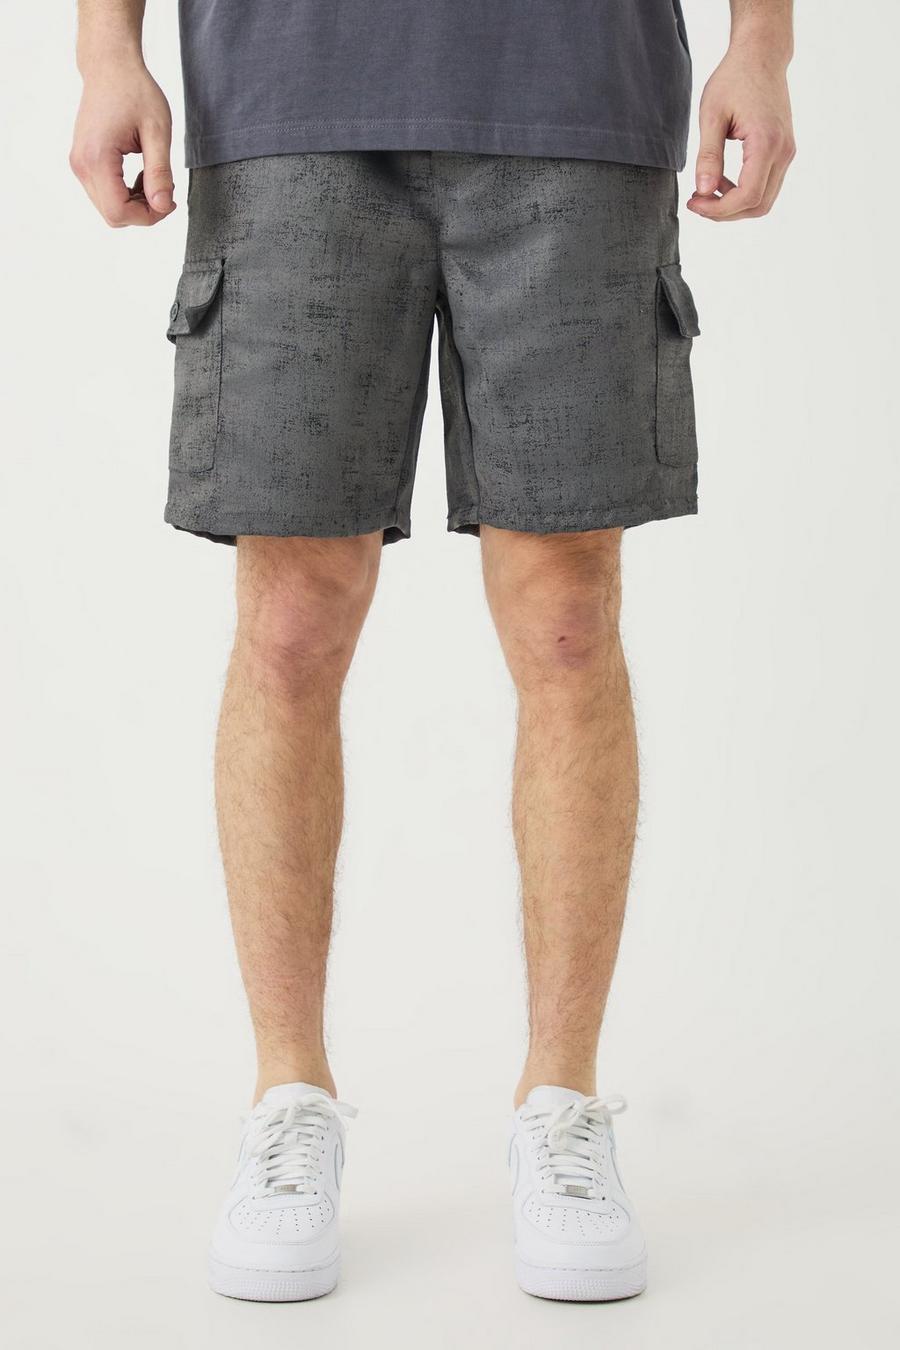 Pantalón corto Tall cargo texturizado con cintura elástica en color carbón, Charcoal image number 1